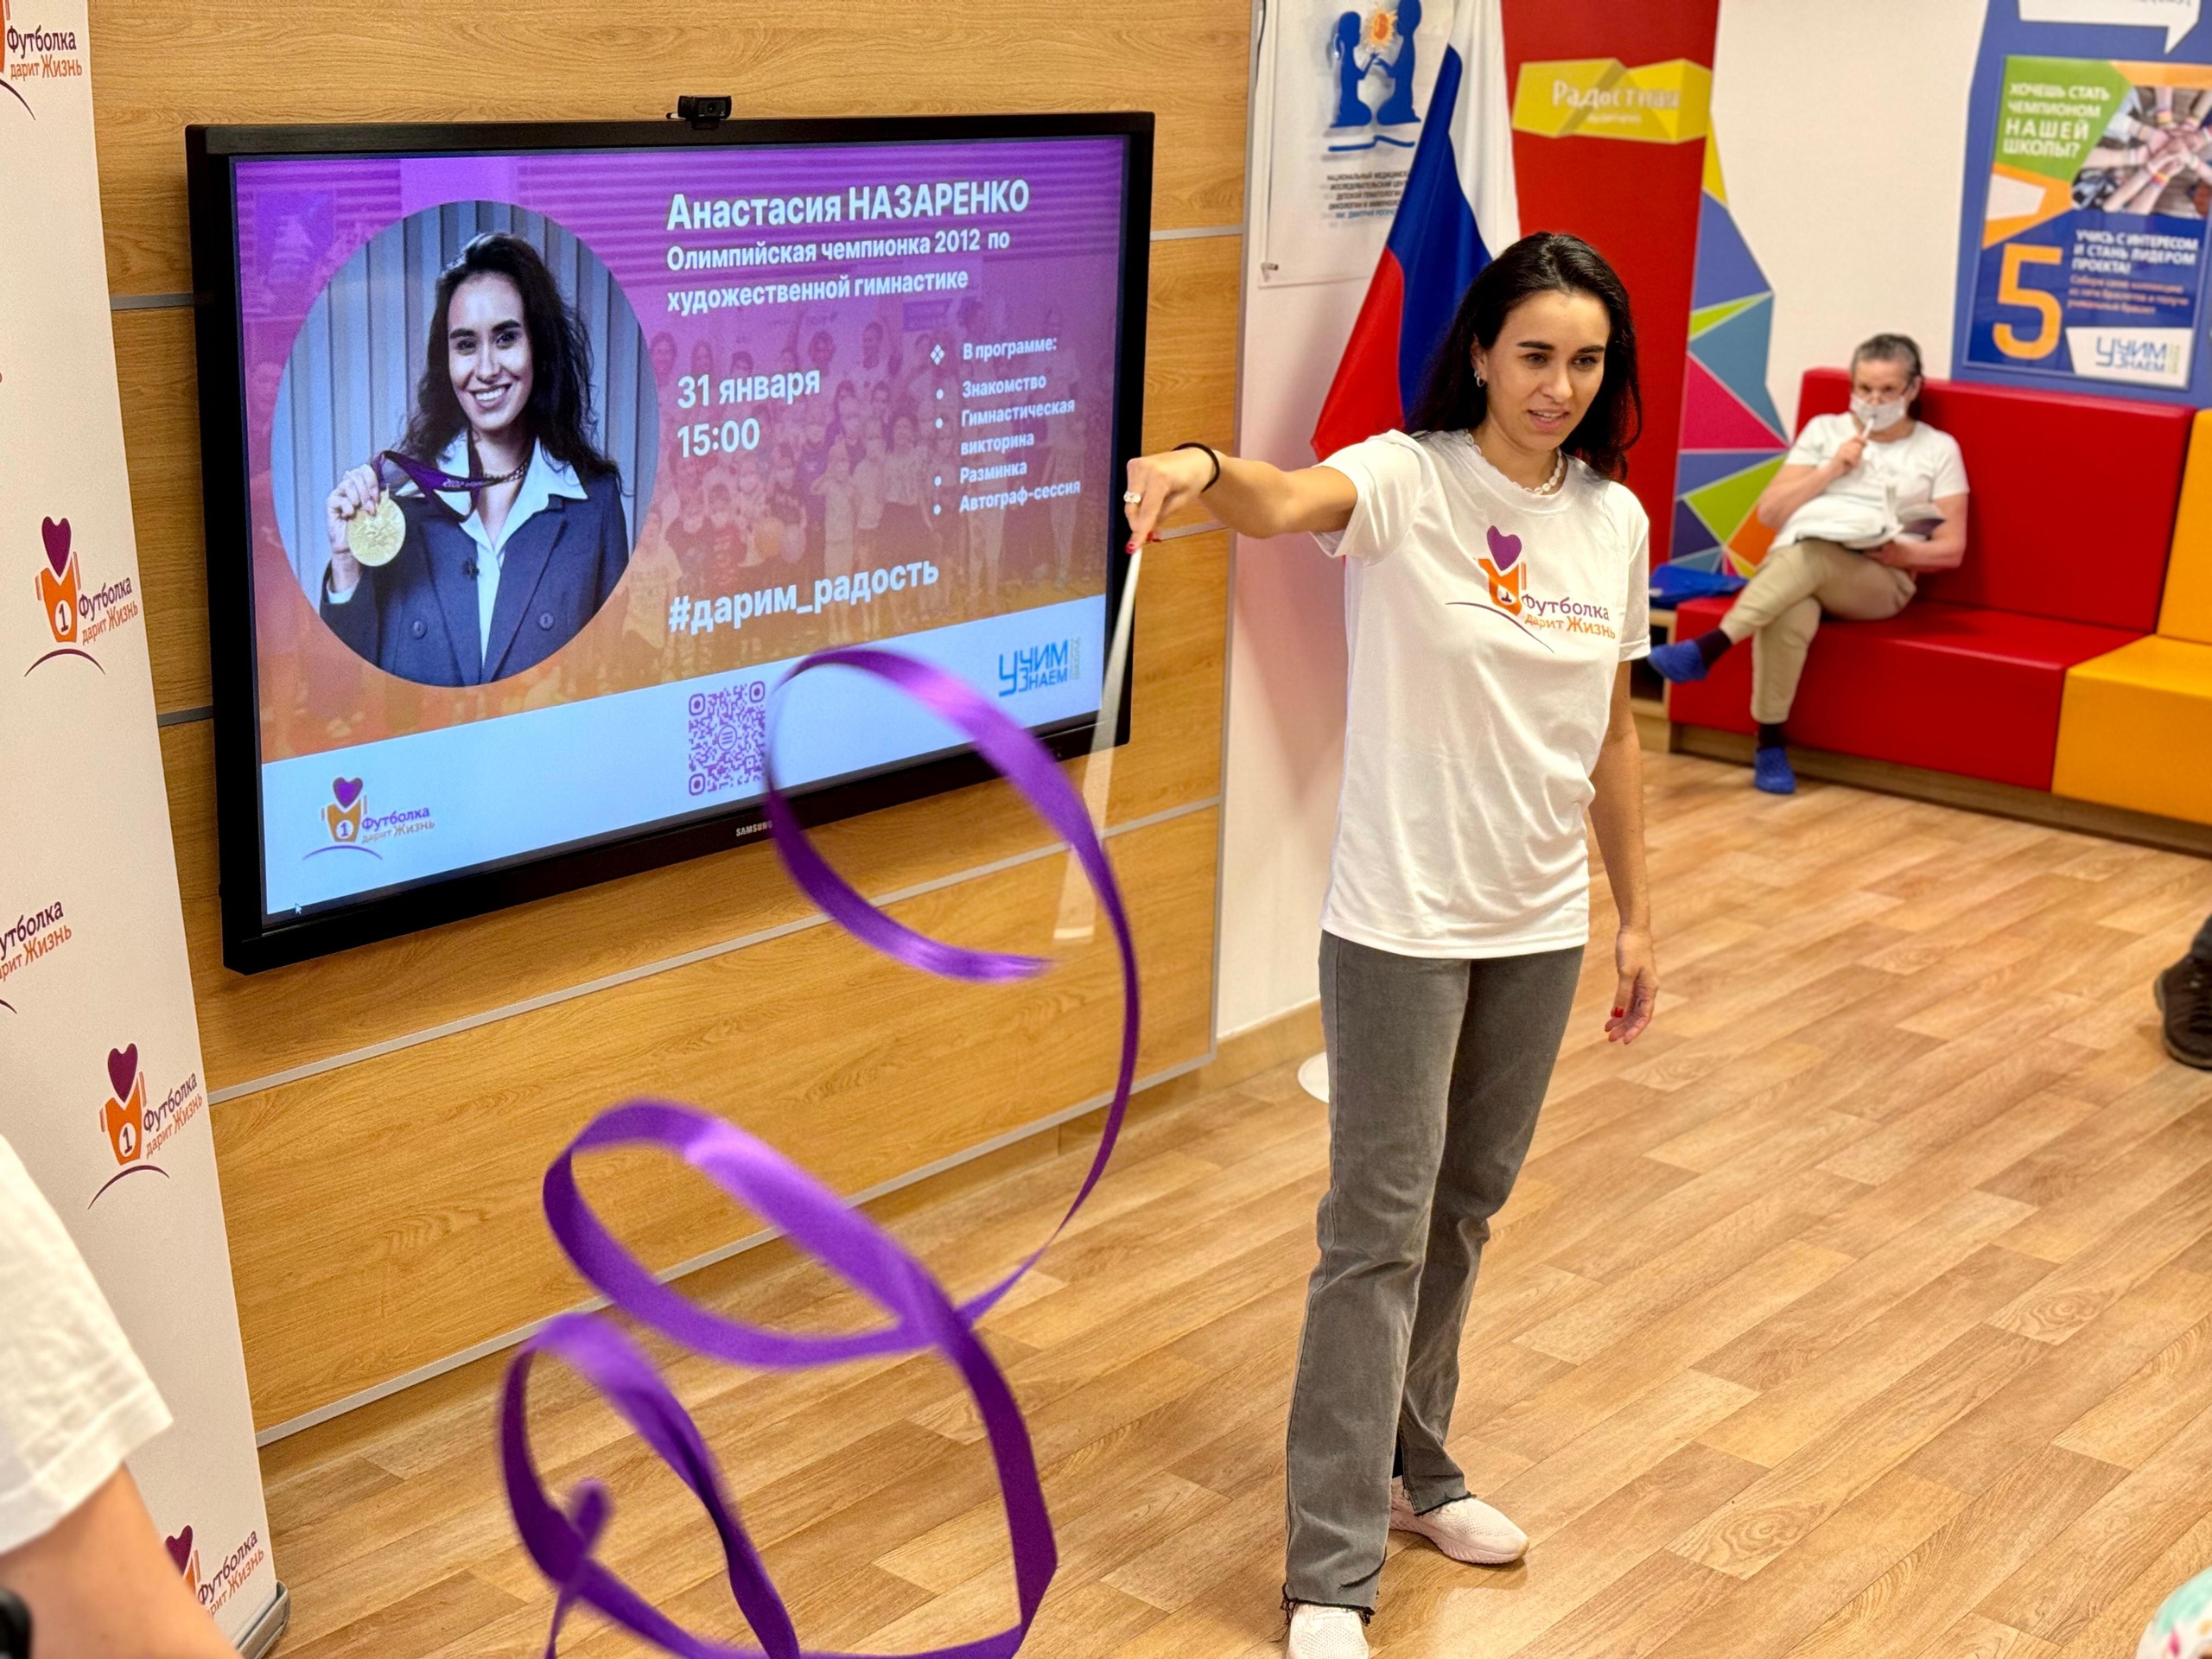 Олимпийская чемпионка по художественной гимнастике 2012 года Анастасия Назаренко побывала в гостях в школе "УчимЗнаем"